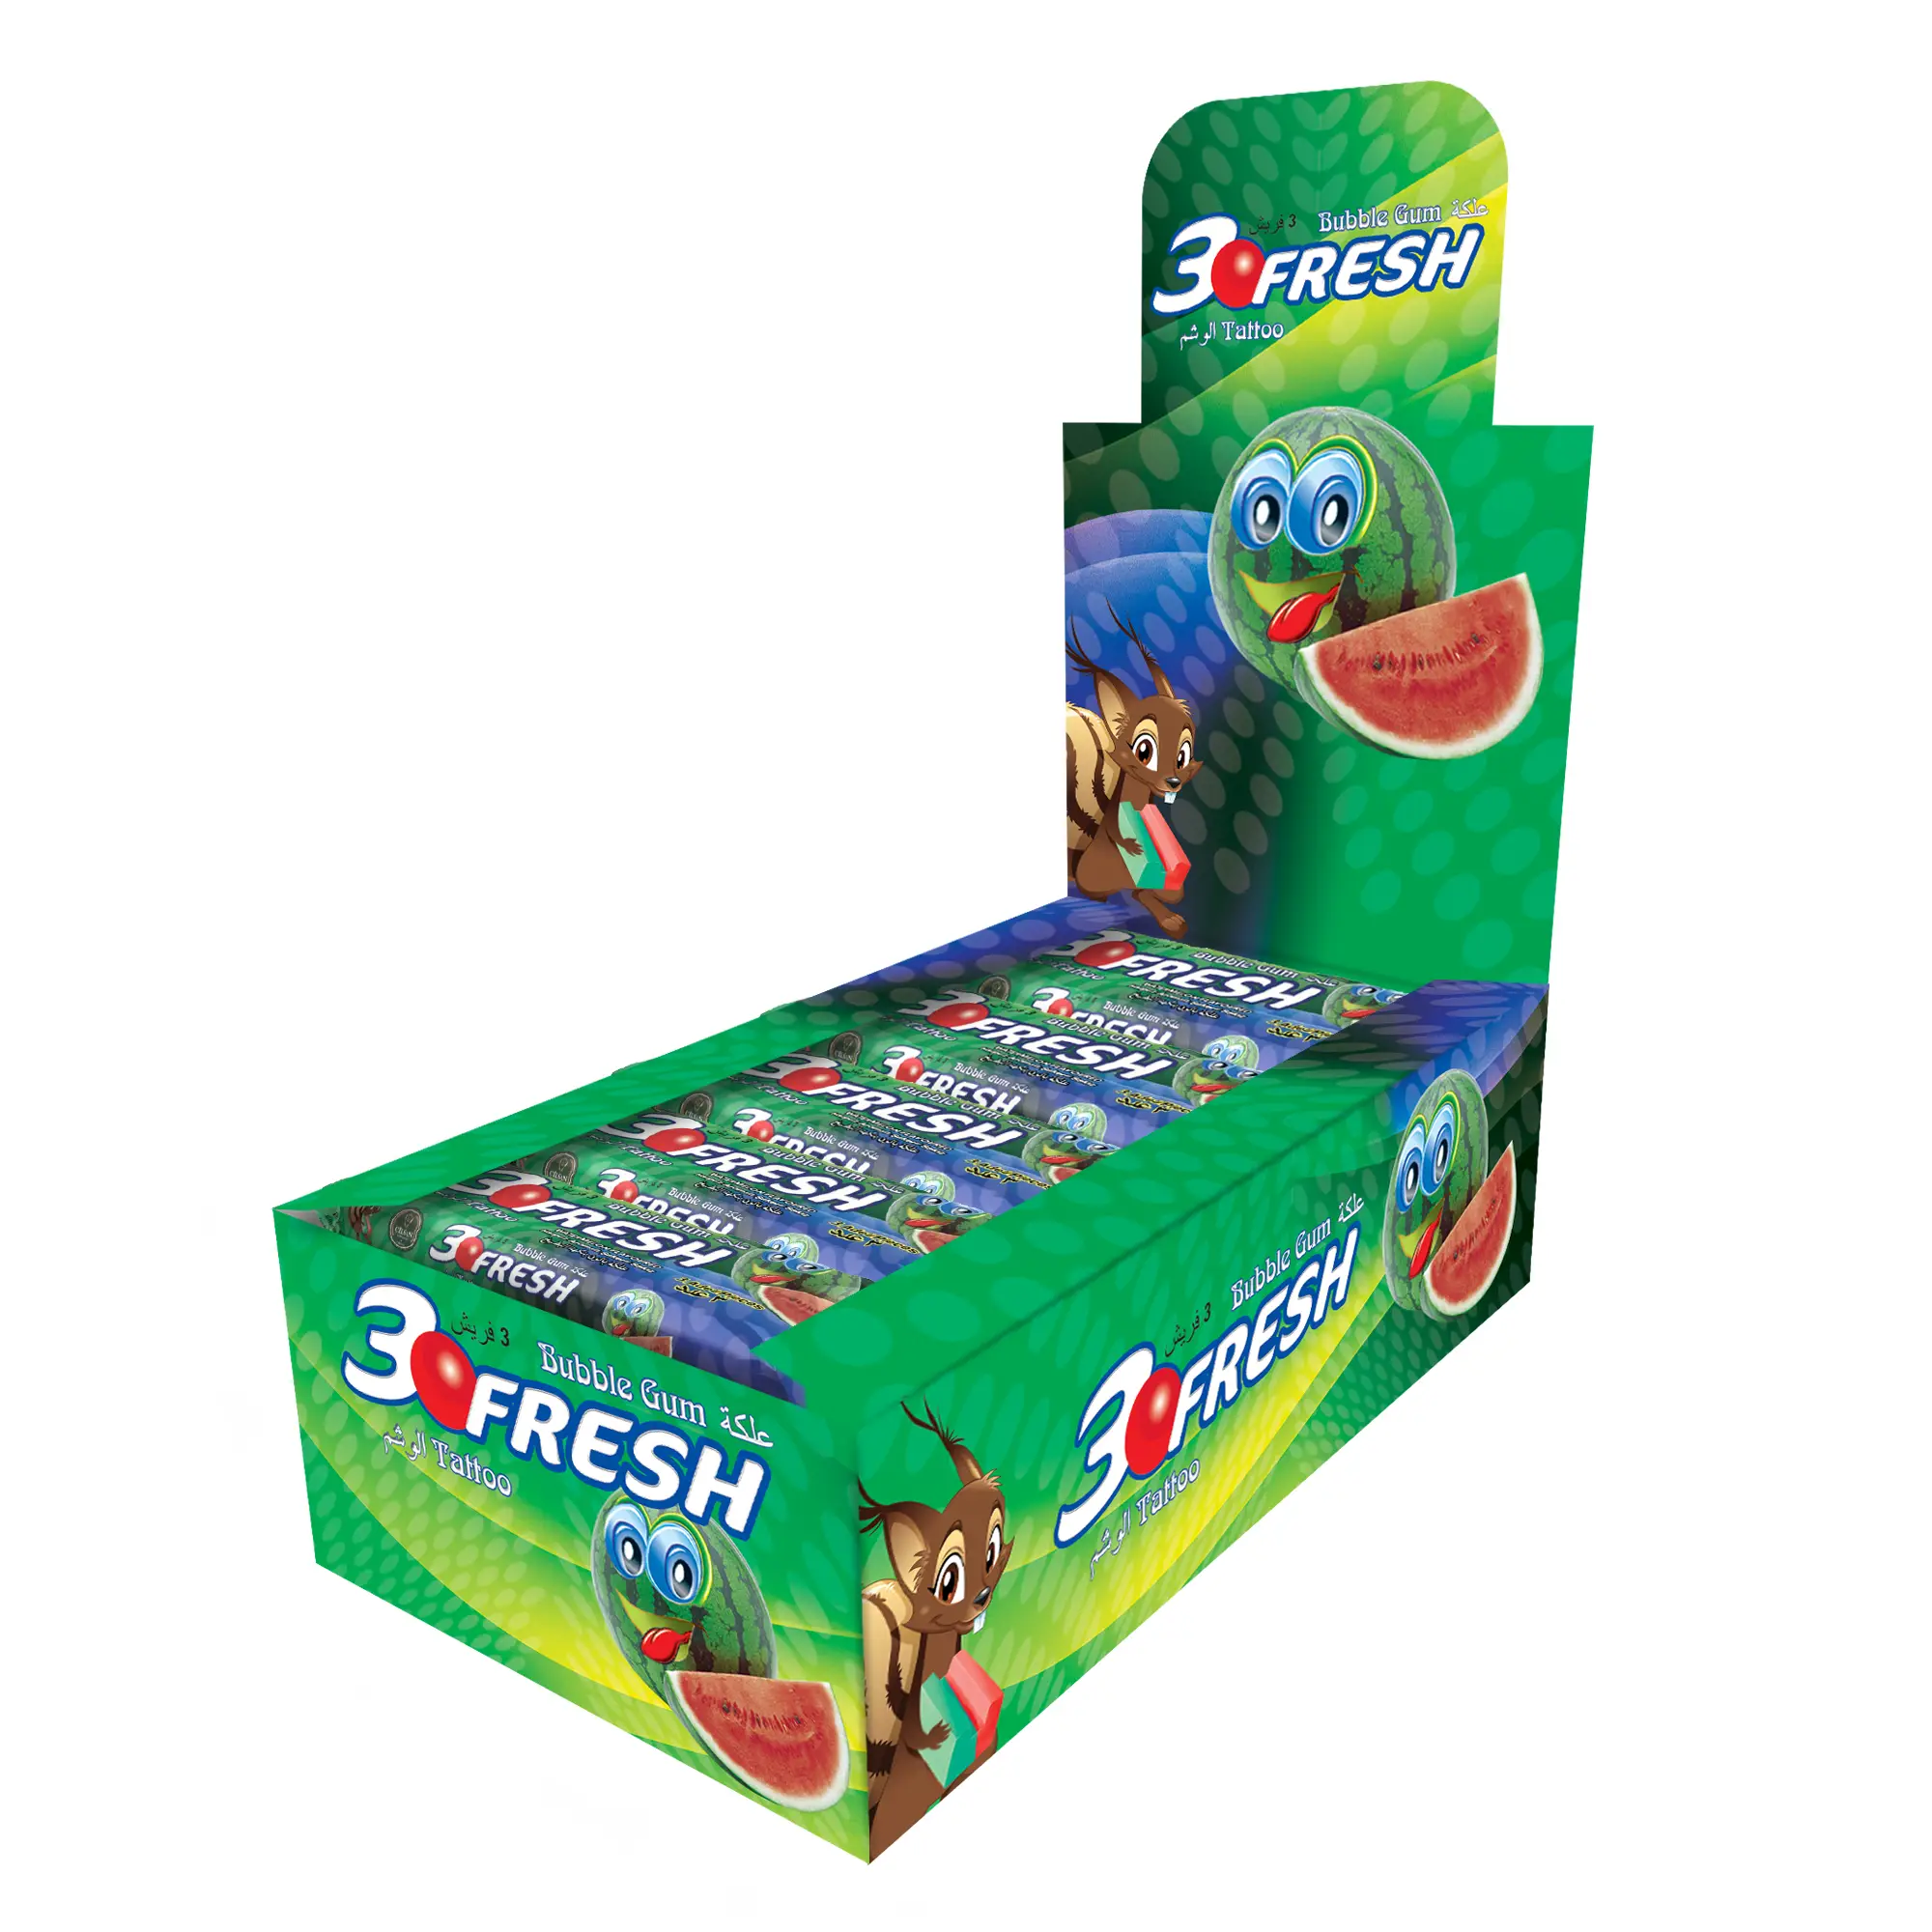 3 Fresh Watermelon Flavoured Stick Gum